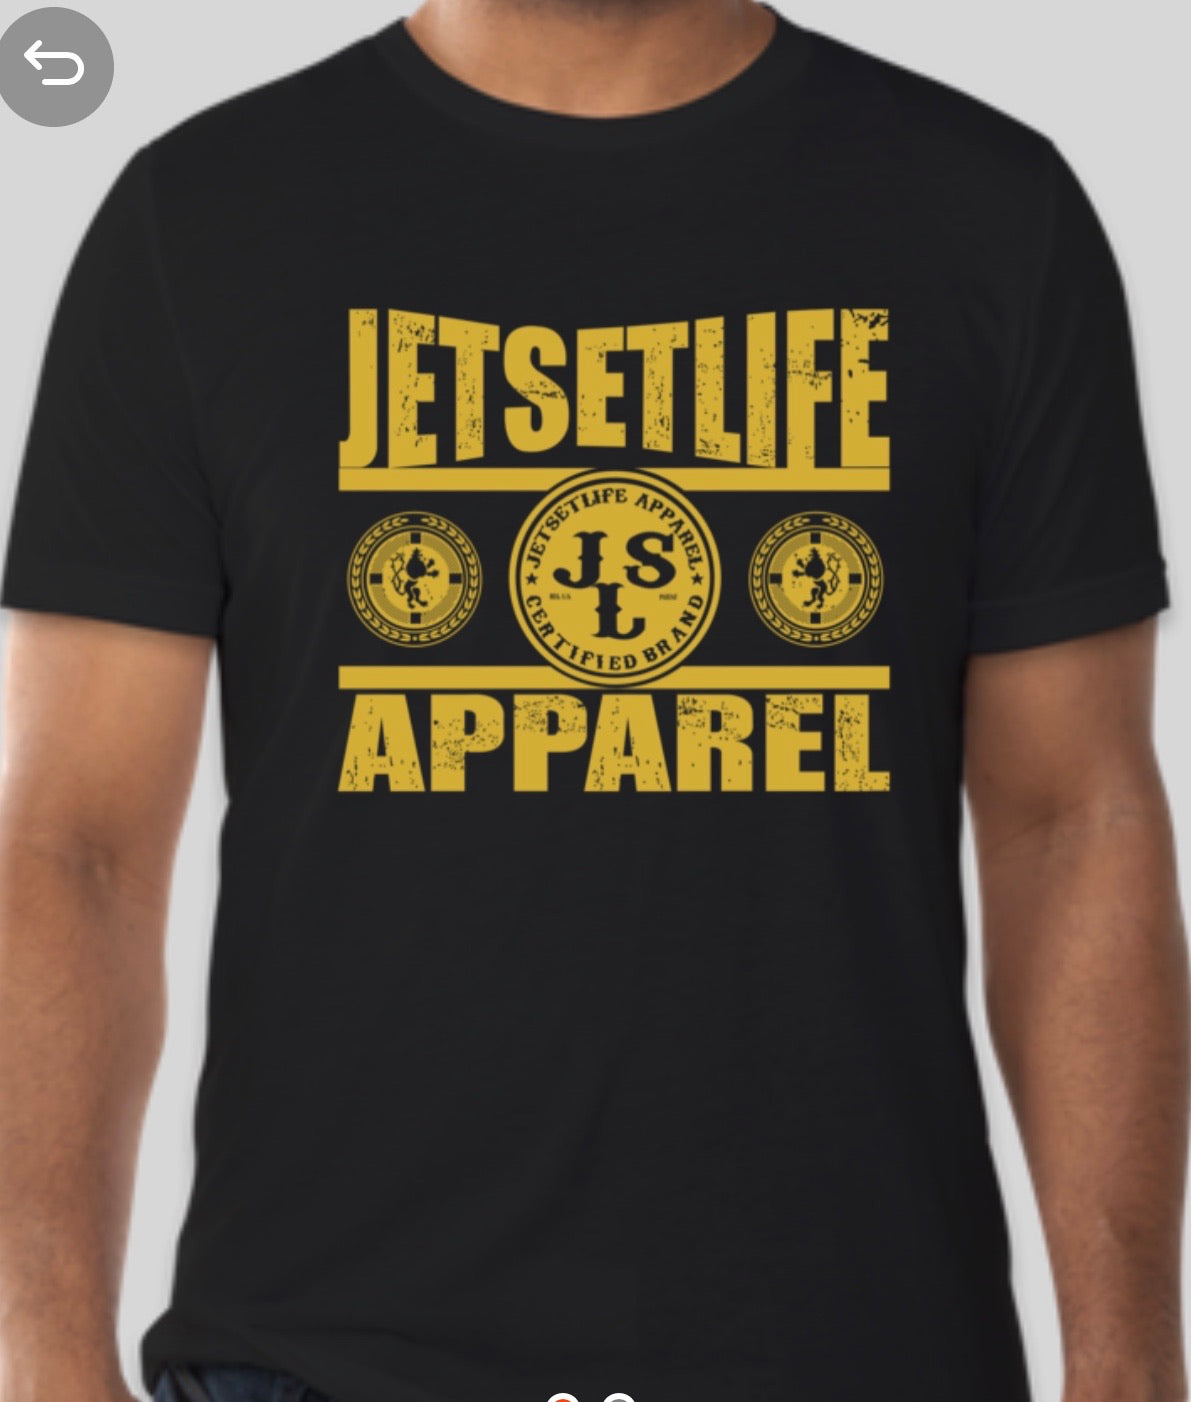 Jetsetlife Apparel Black & Gold